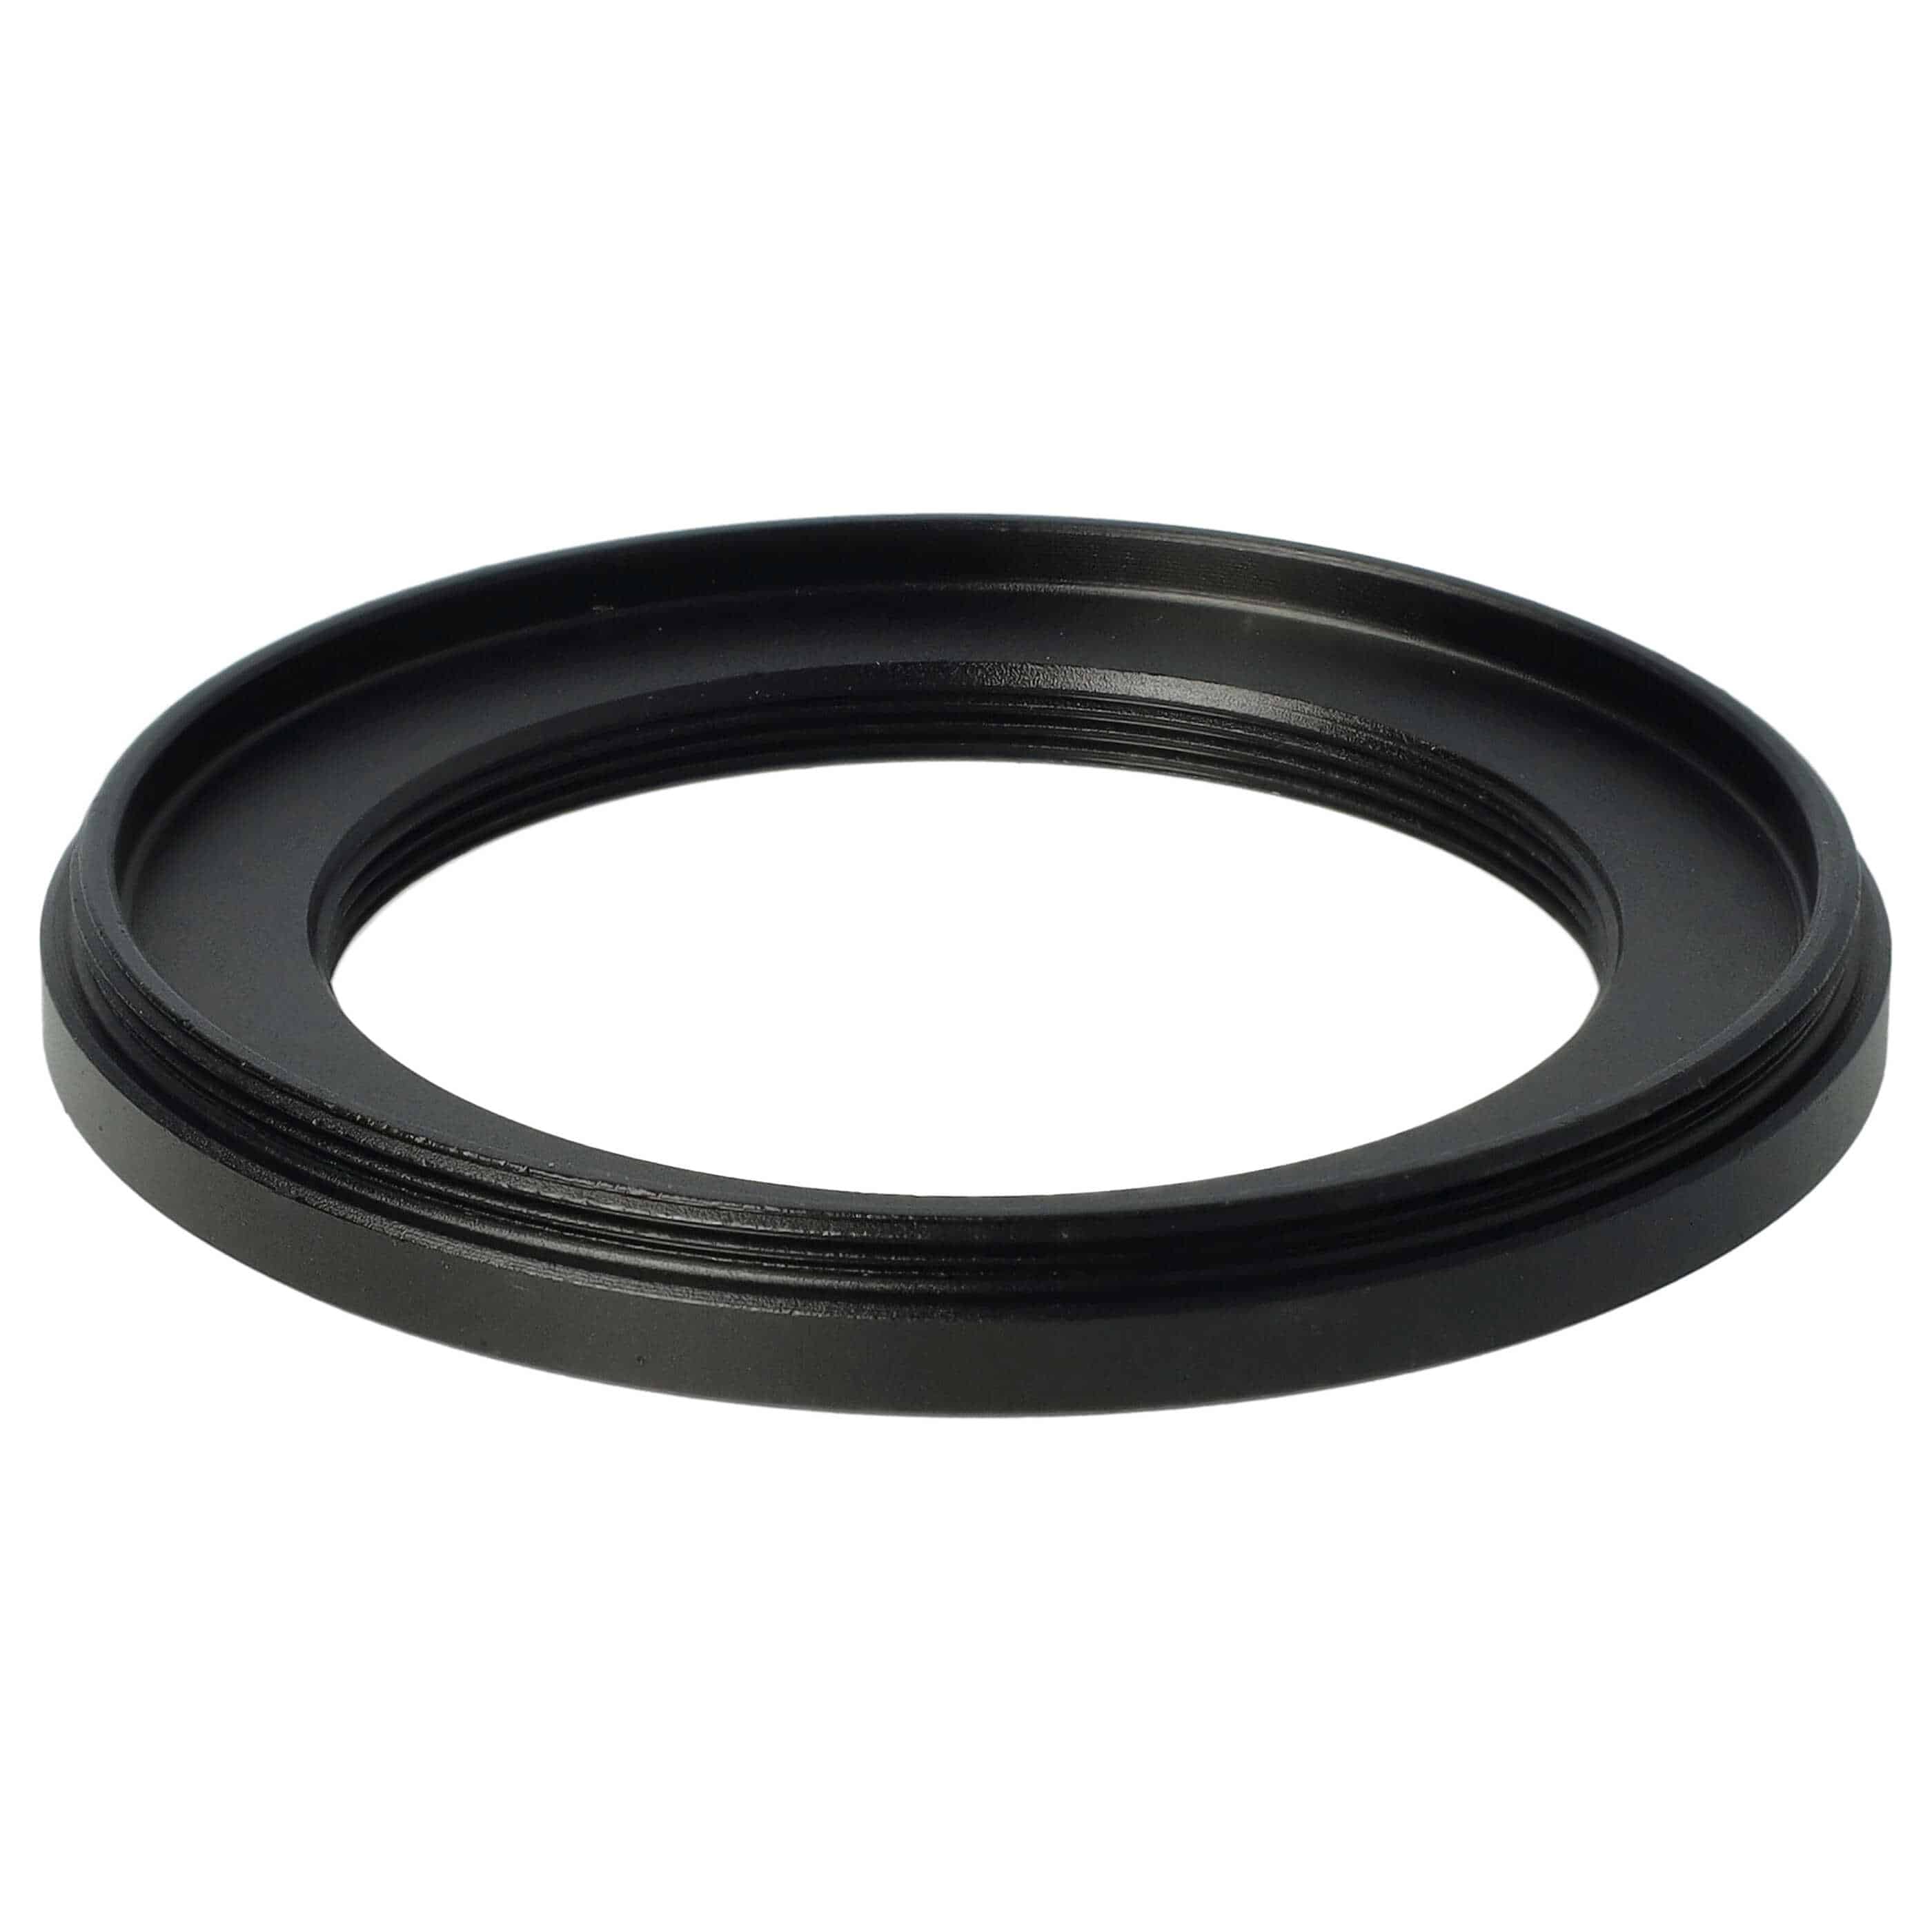 Step-Down-Ring Adapter von 58 mm auf 42 mm passend für Kamera Objektiv - Filteradapter, Metall, schwarz